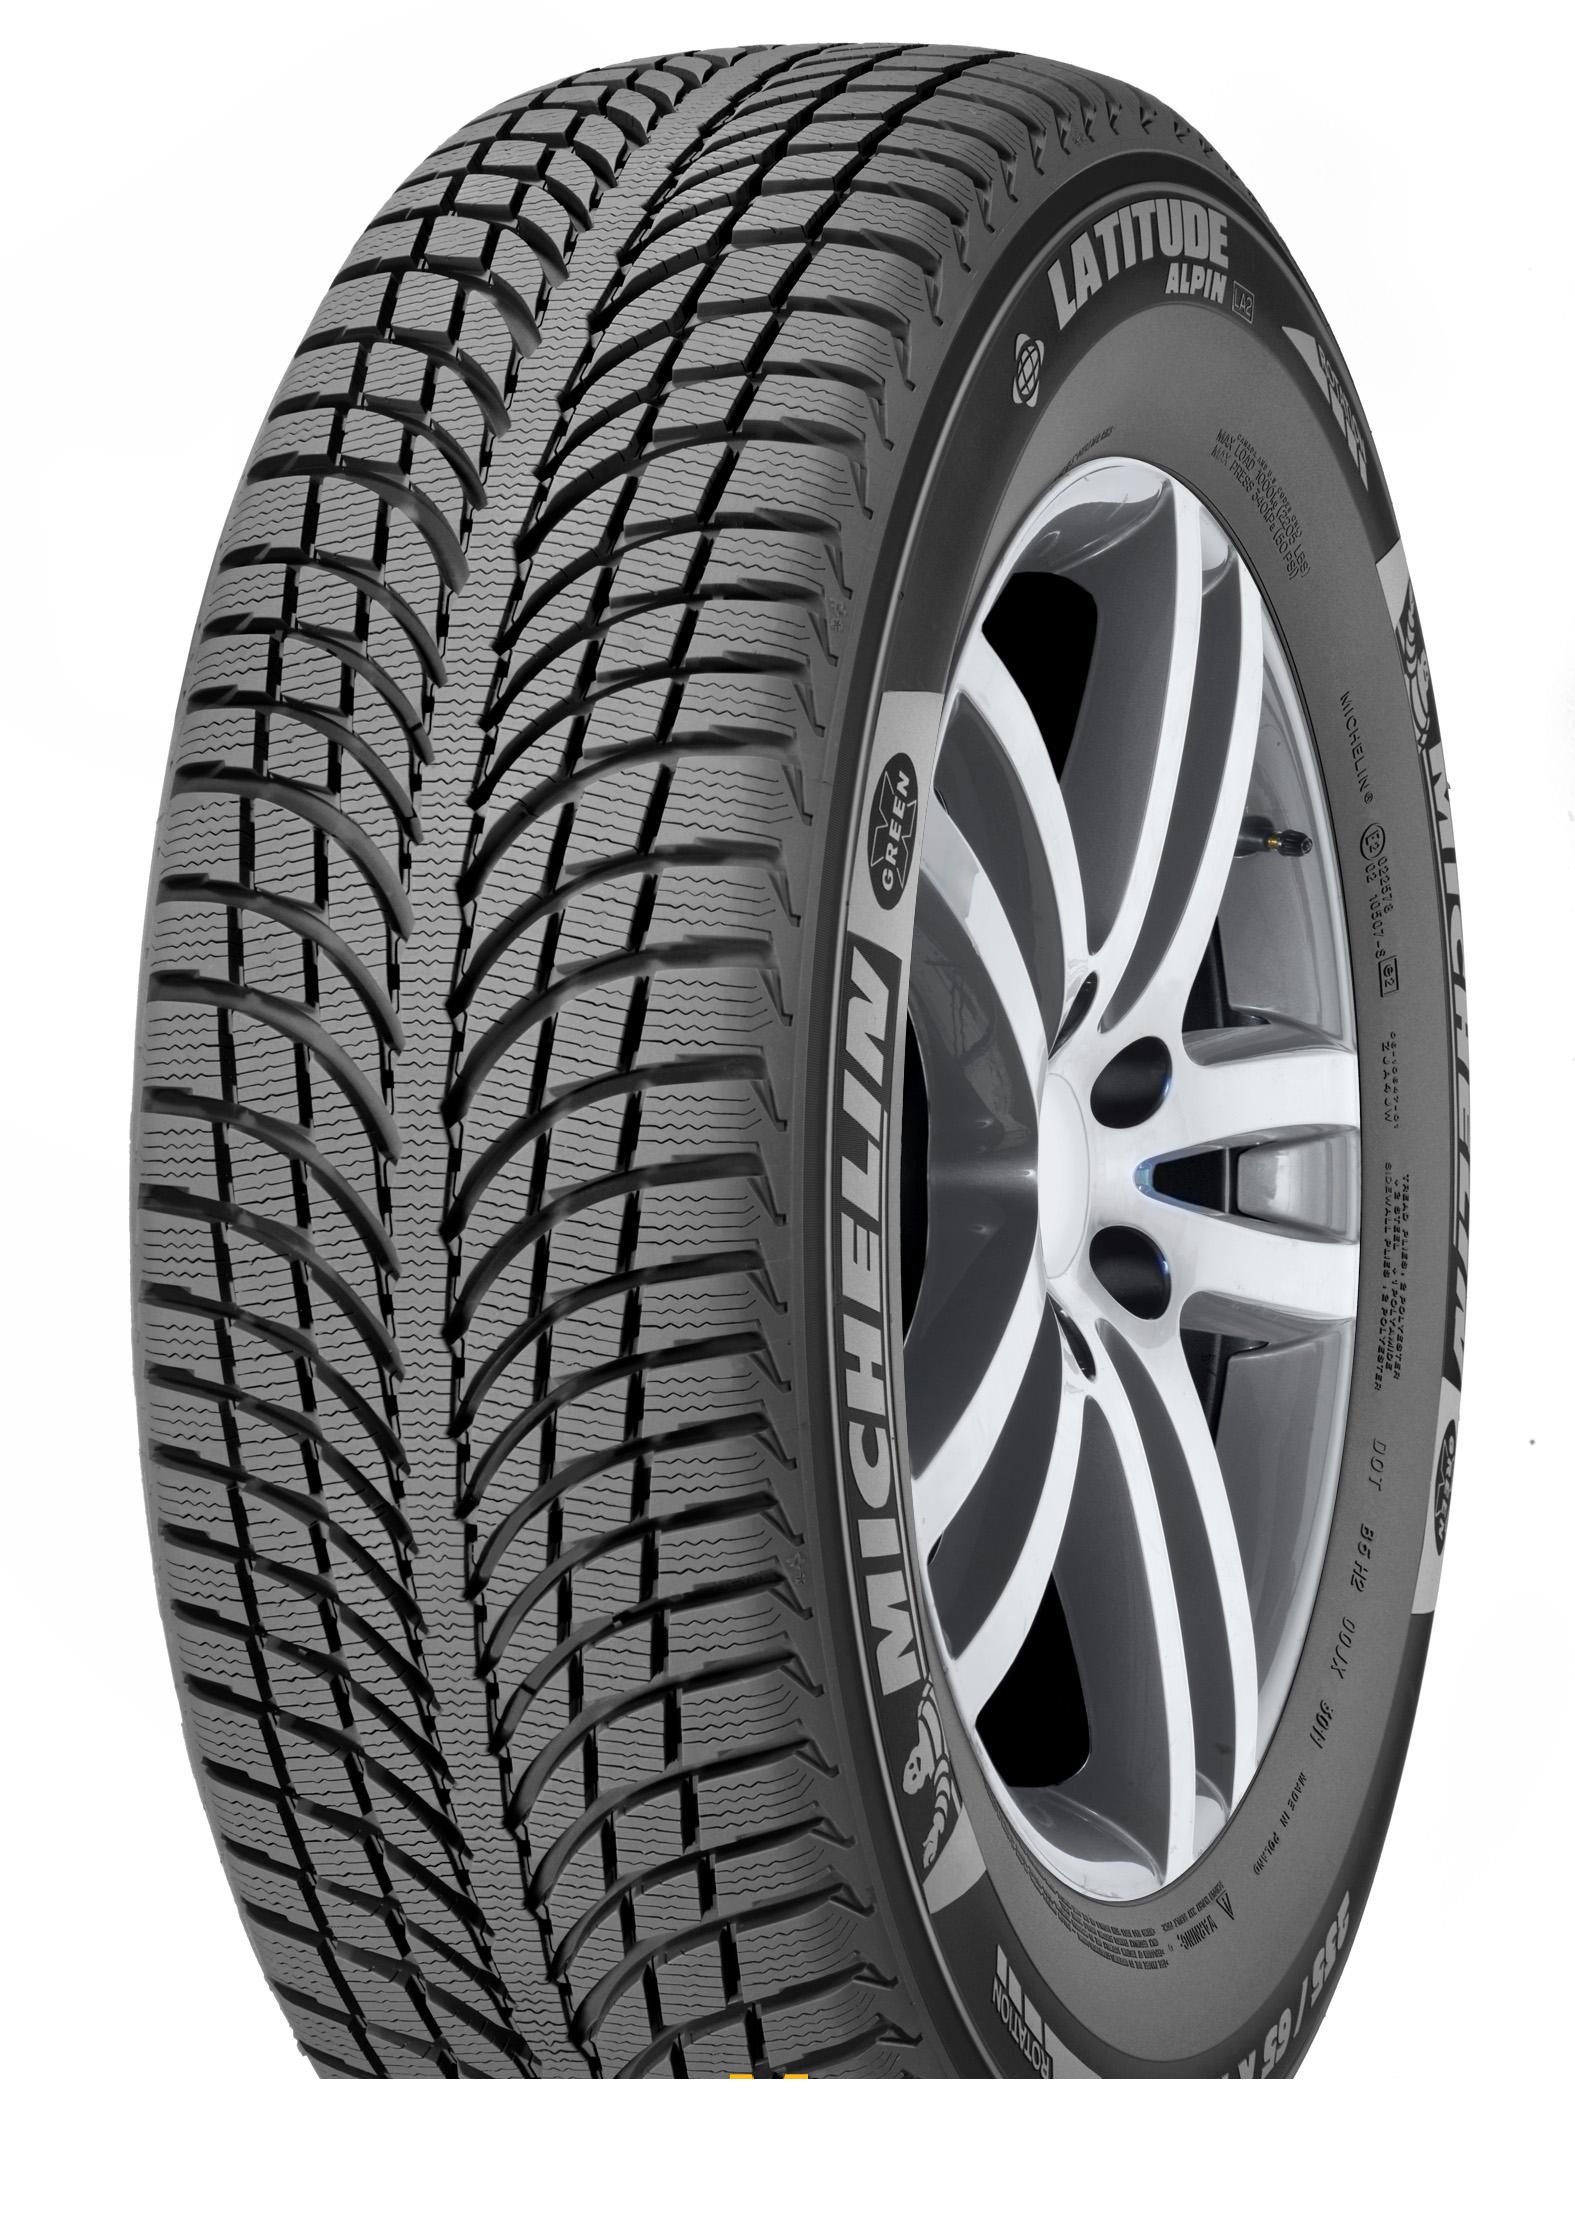 Tire Michelin Latitude Alpin 2 225/65R17 106H - picture, photo, image